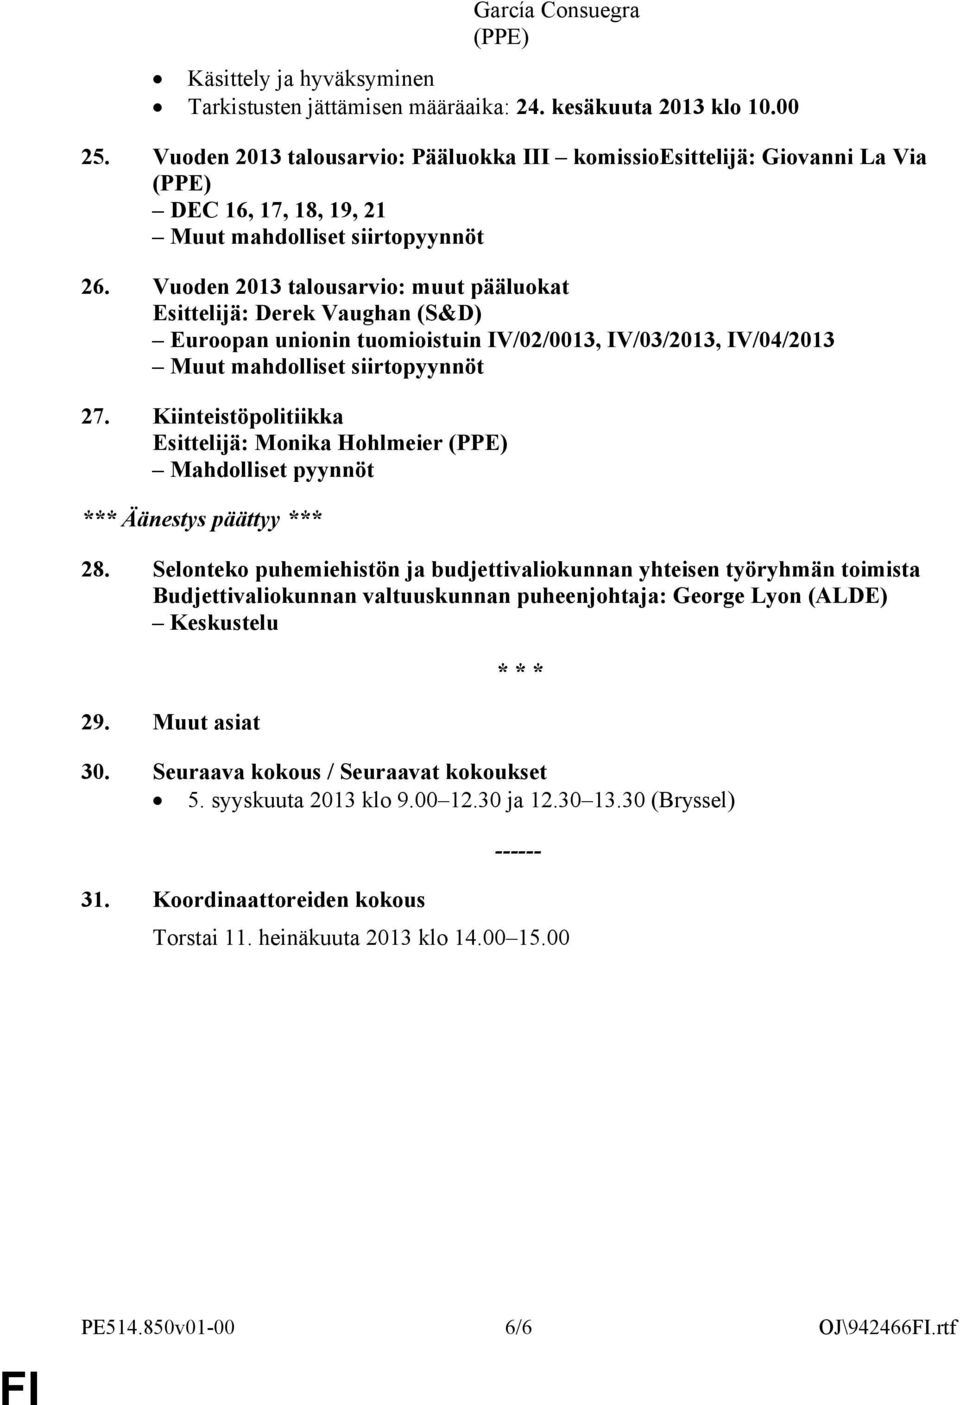 Vuoden 2013 talousarvio: muut pääluokat Esittelijä: Derek Vaughan (S&D) Euroopan unionin tuomioistuin IV/02/0013, IV/03/2013, IV/04/2013 Muut mahdolliset siirtopyynnöt 27.